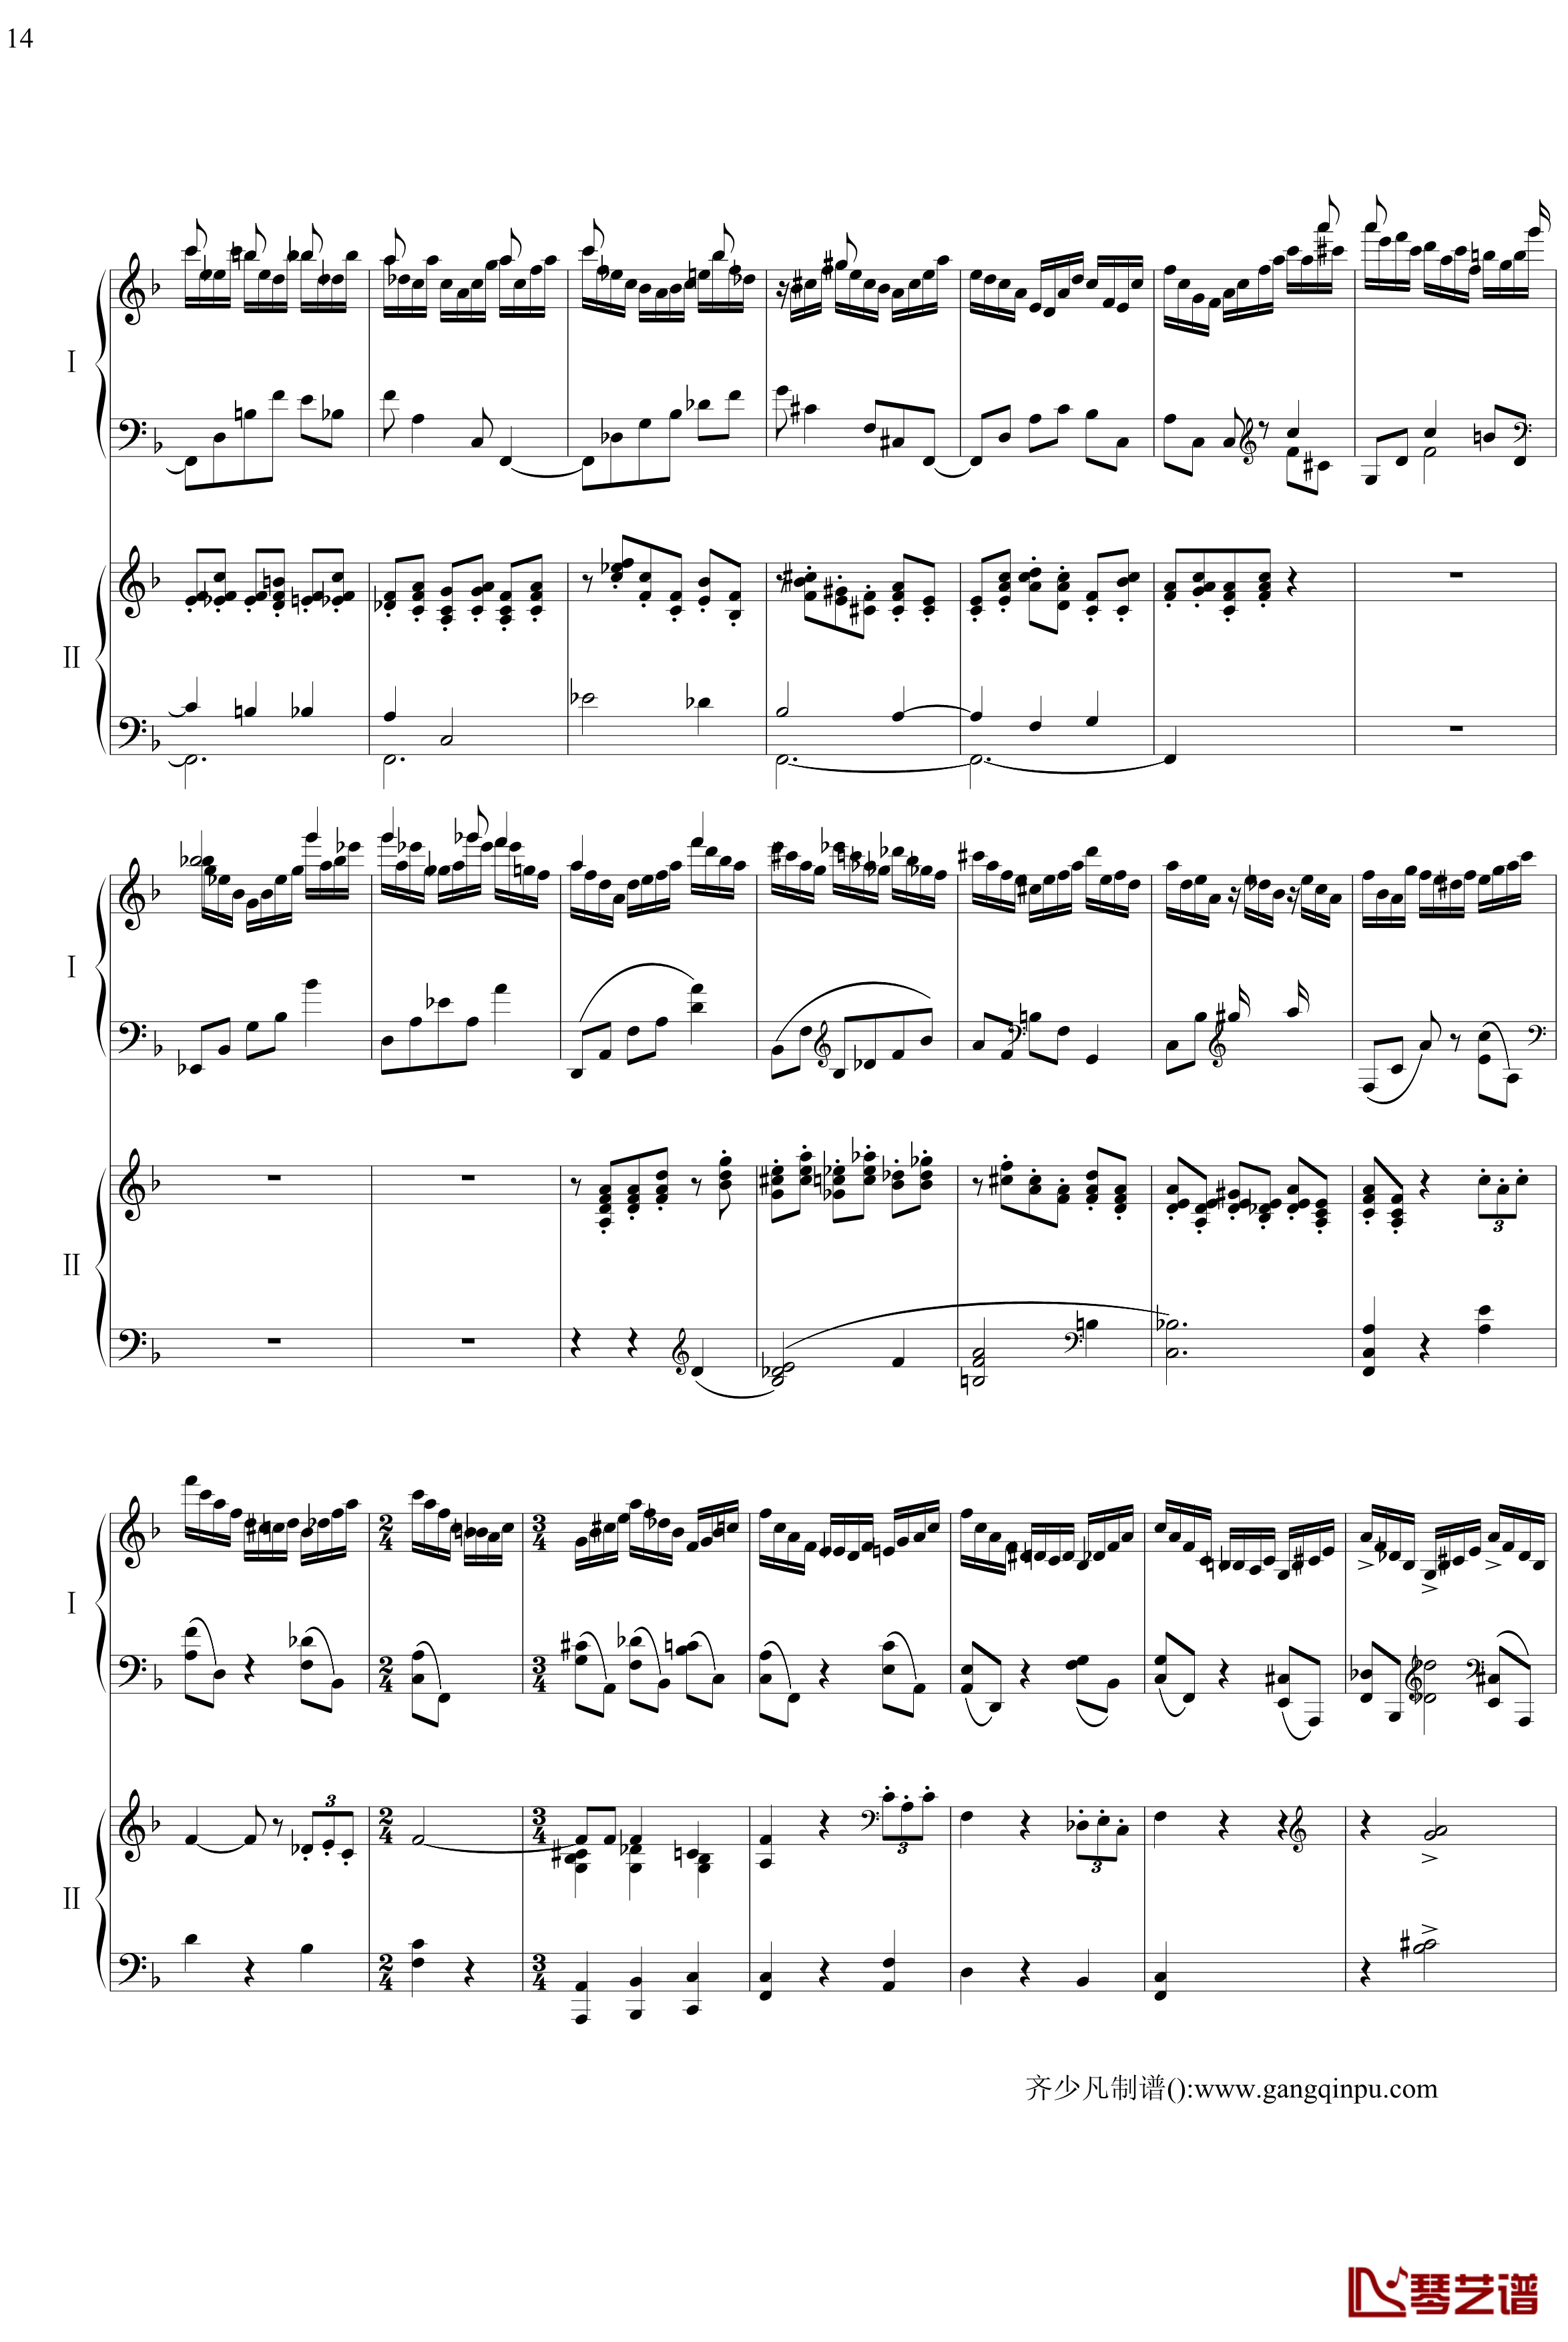 帕格尼尼主题狂想曲钢琴谱-11~18变奏-拉赫马尼若夫14